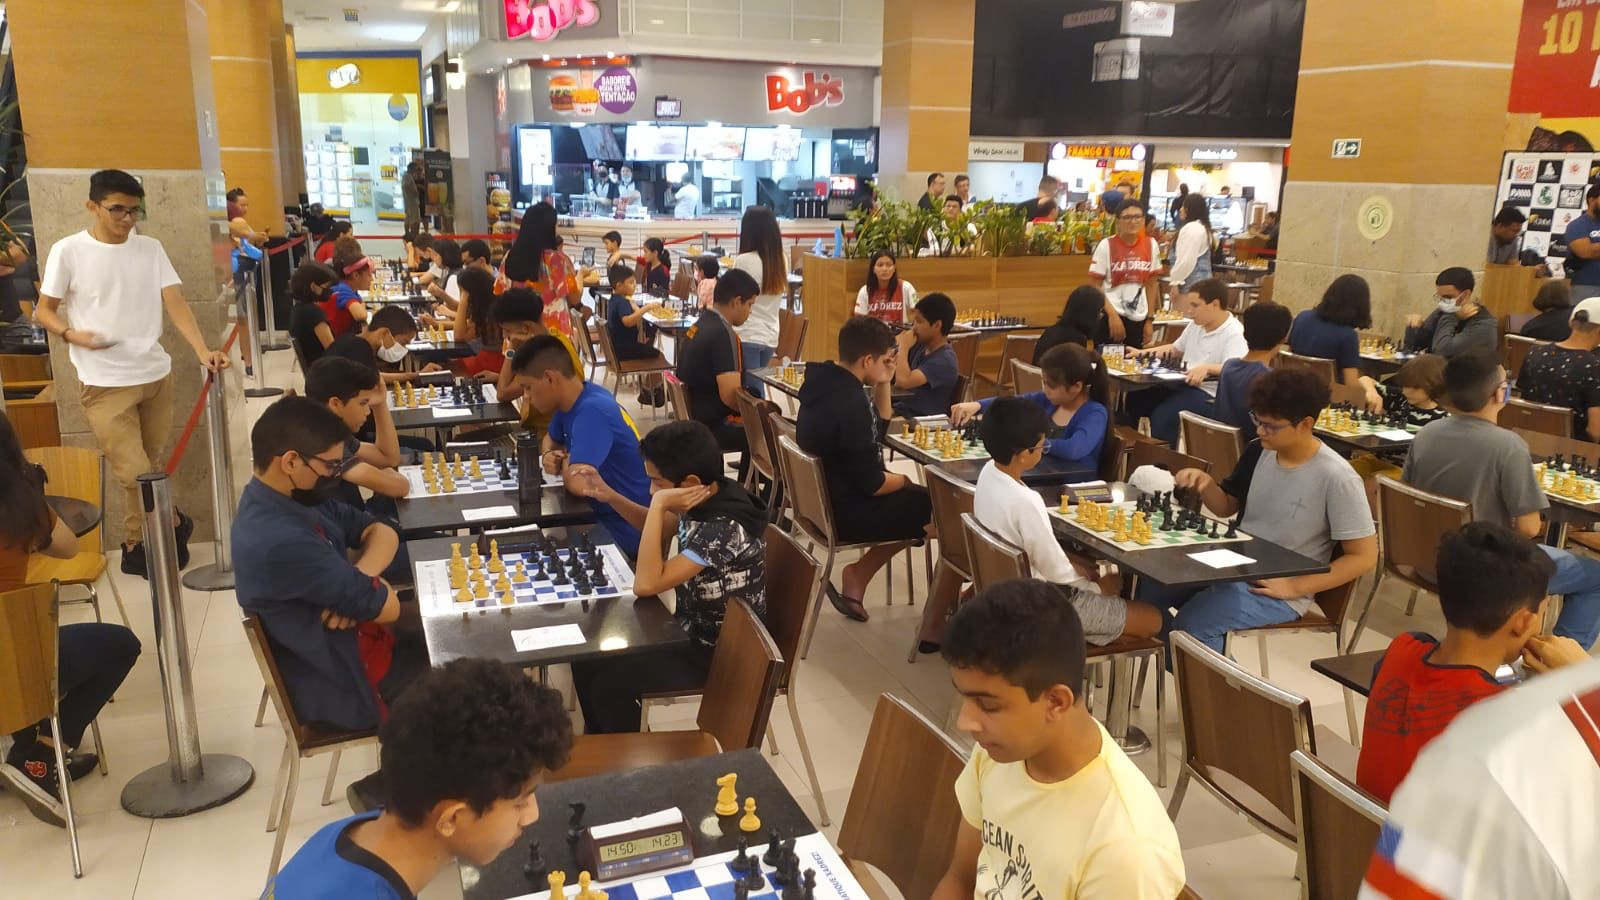 Manaus Chess Open reúne os mestres do xadrez de alto nível